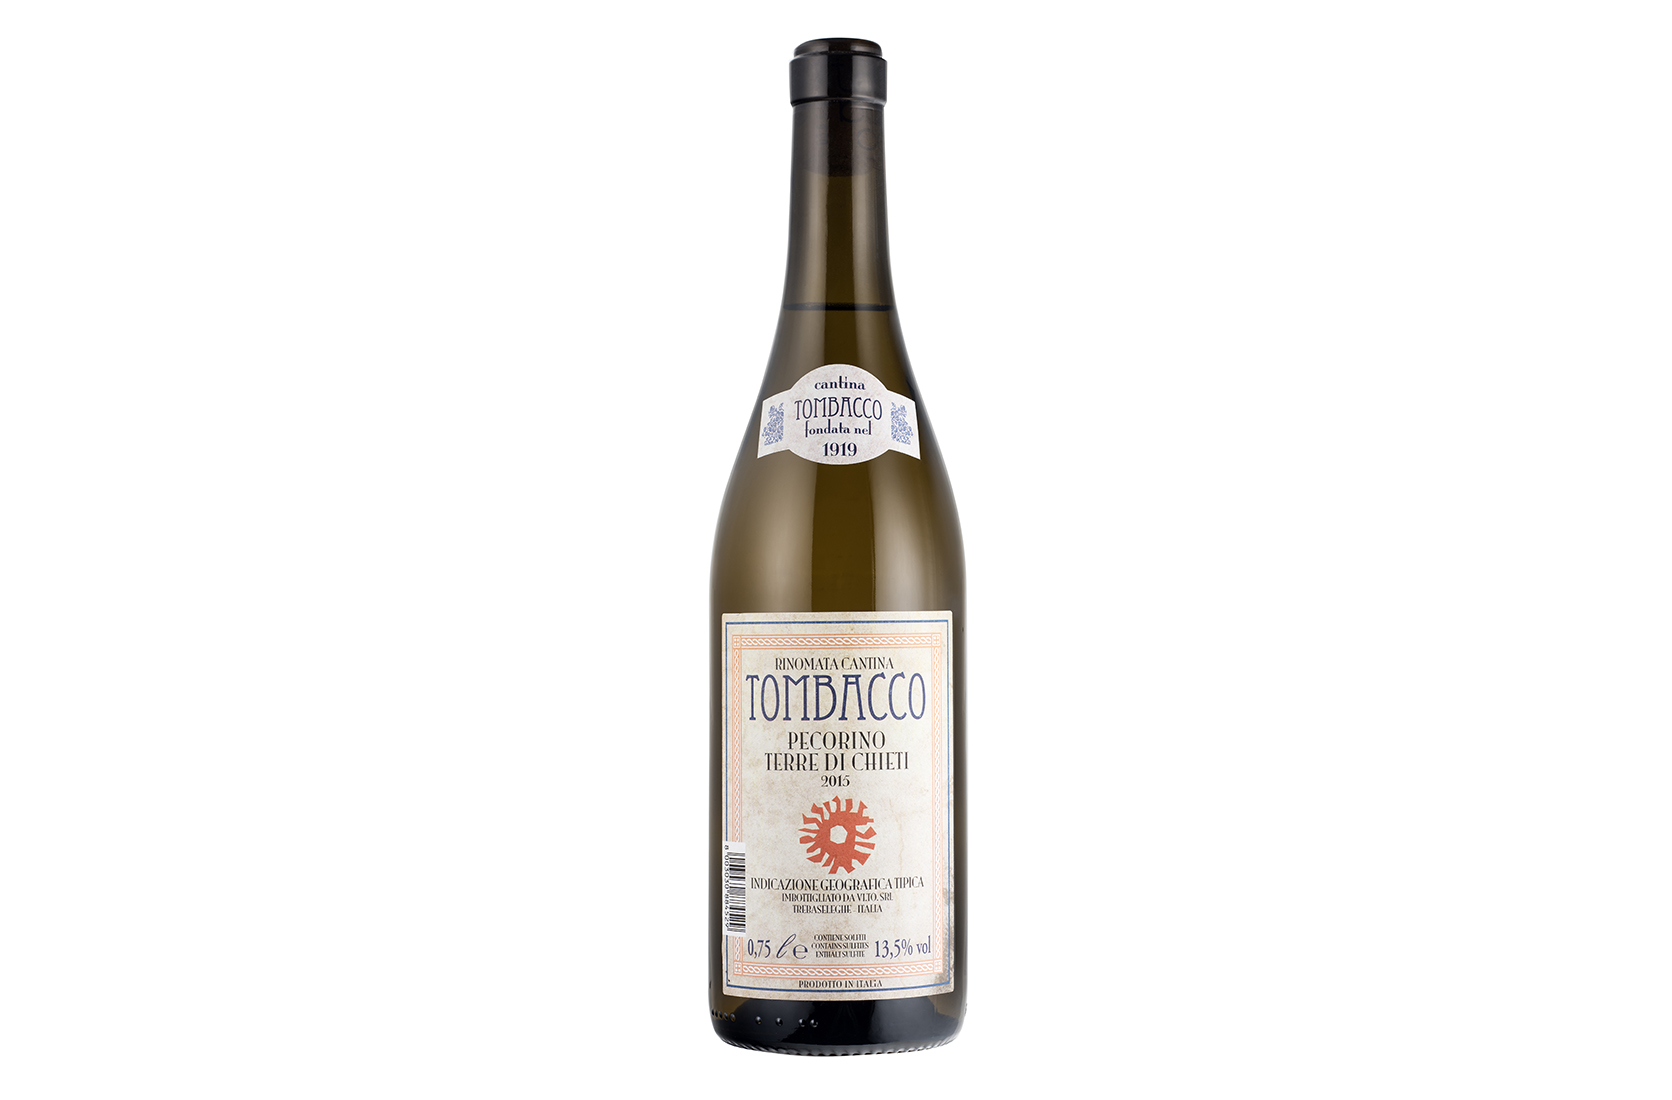 Die Pecorino-Traube ist eine sehr alte Traube. Sie wurde Anfang der 80er Jahre (wieder-) entdeckt und salonfähig gemacht. Heute bringt sie charaktervolle und komplexe Weißweine hervor, die vor allem von Weinkennern als Spitzenerzeugnisse geschätzt werden.